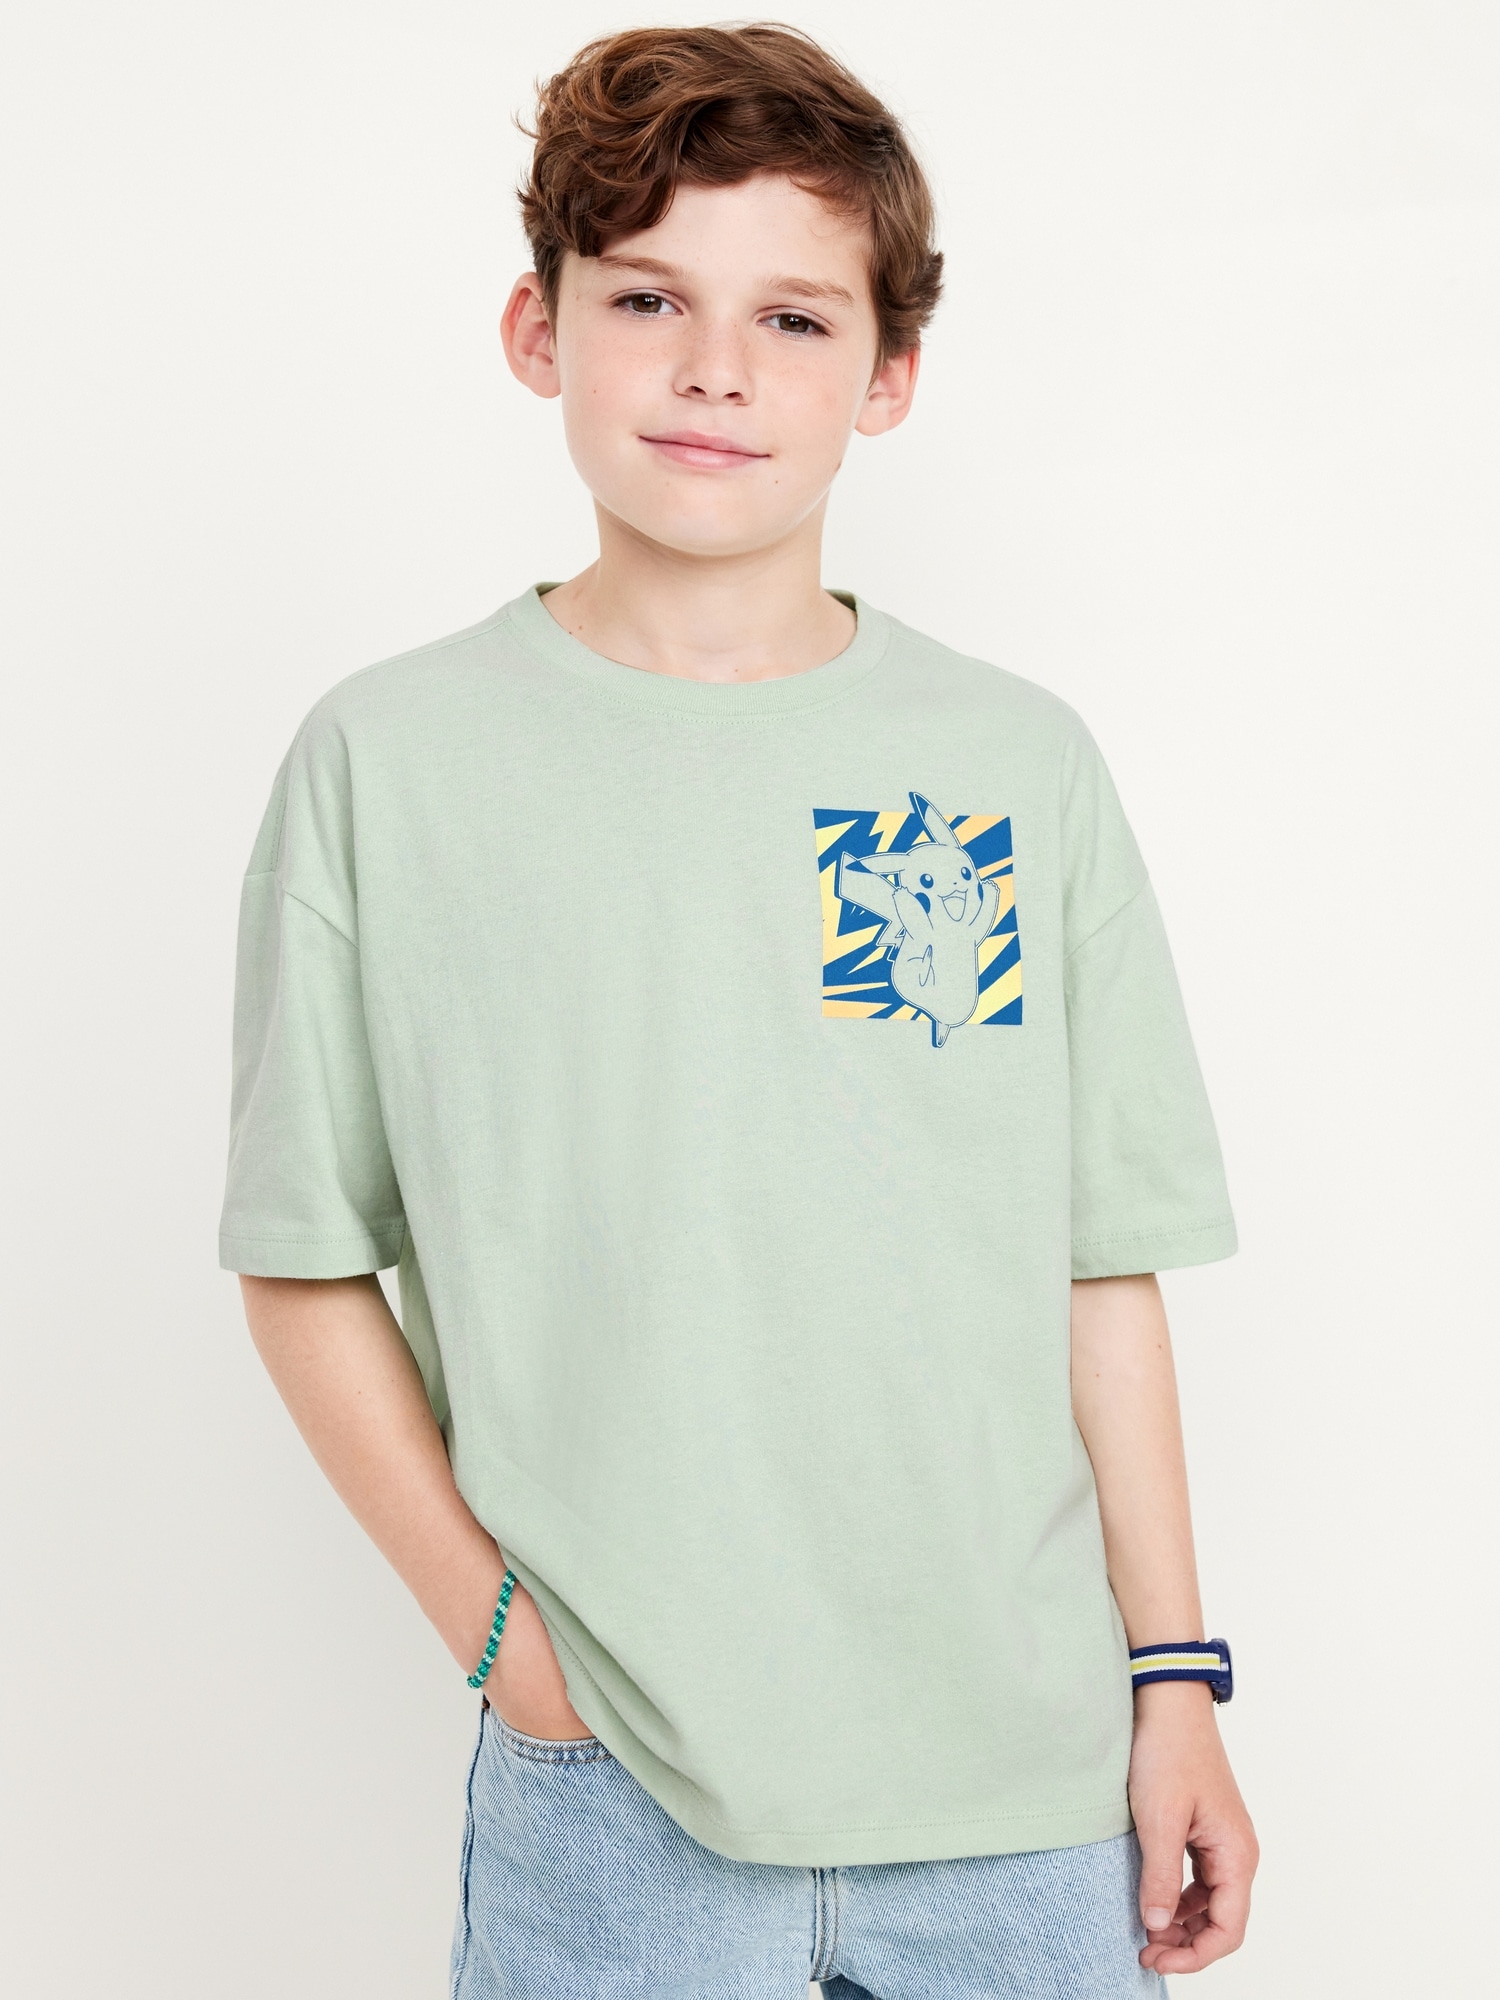 Pokmon Oversized Gender-Neutral Graphic T-Shirt for Kids